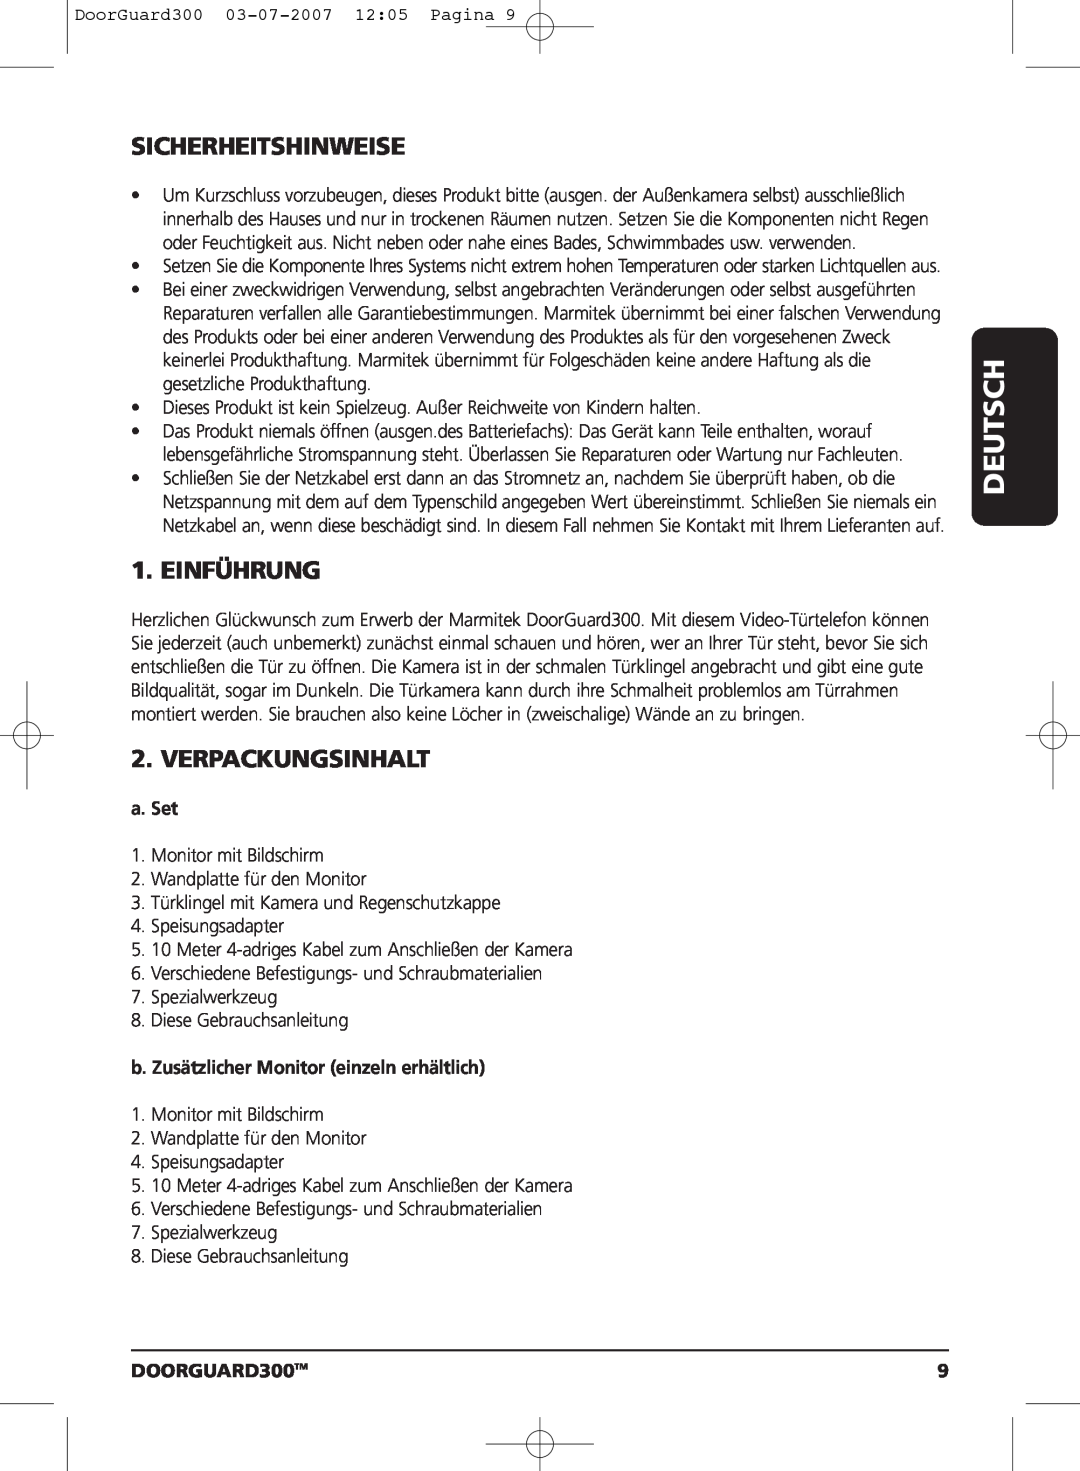 Marmitek DOORGUARD300TM user manual Deutsch, Sicherheitshinweise, Einführung, Verpackungsinhalt, a. Set 